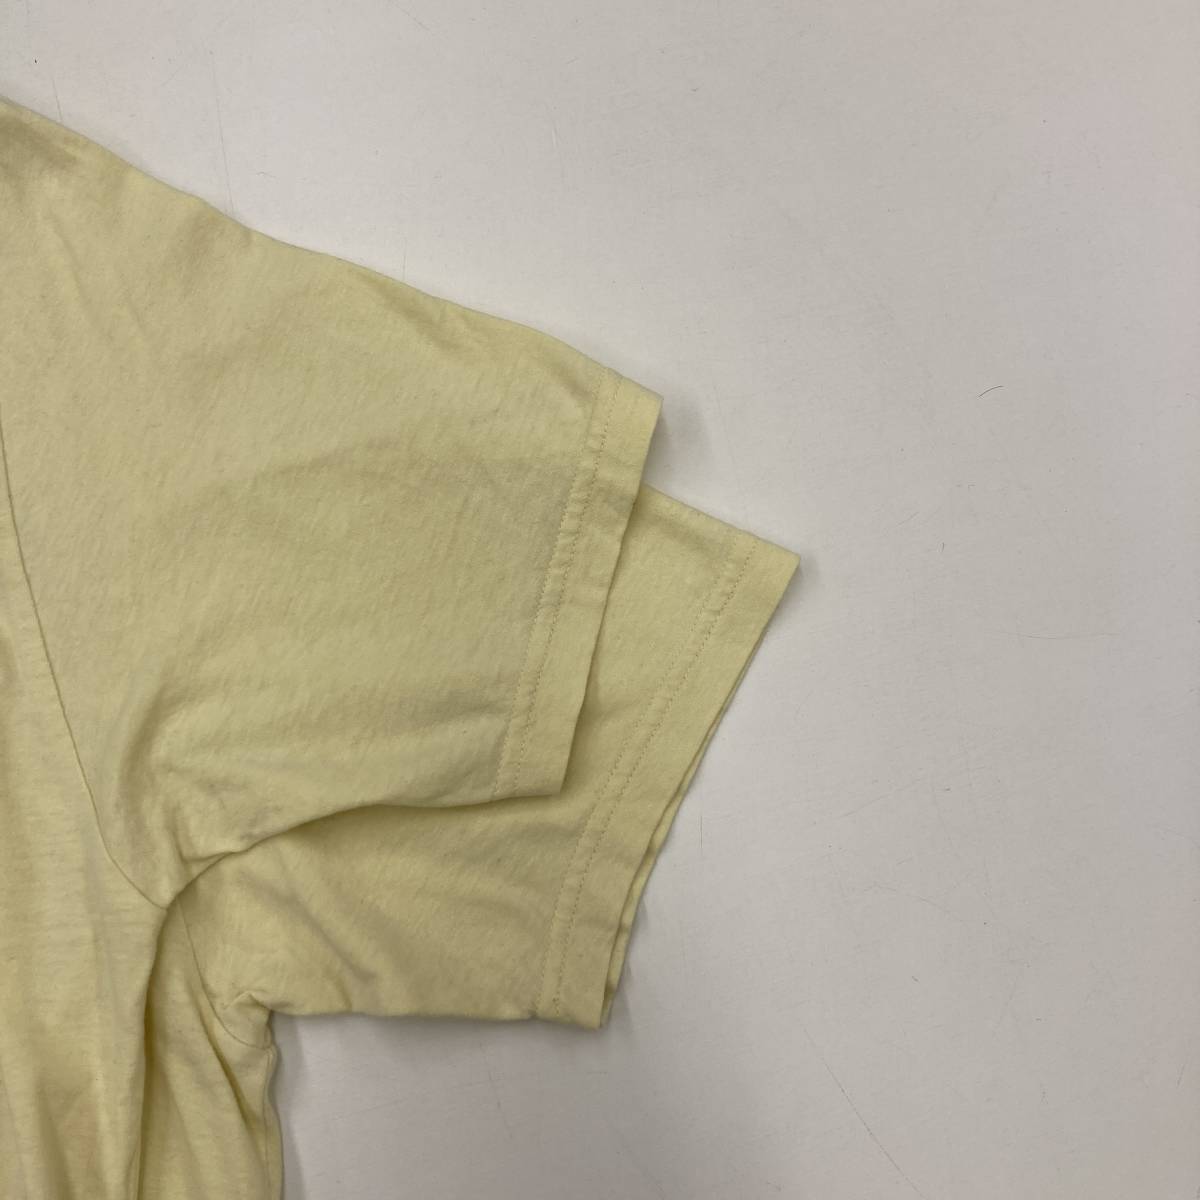  редкость первый период UNDERCOVER иллюстрации футболка желтый 2 размер undercover трикотаж с коротким рукавом Tee T период BUT GURUGURU archive 3020122